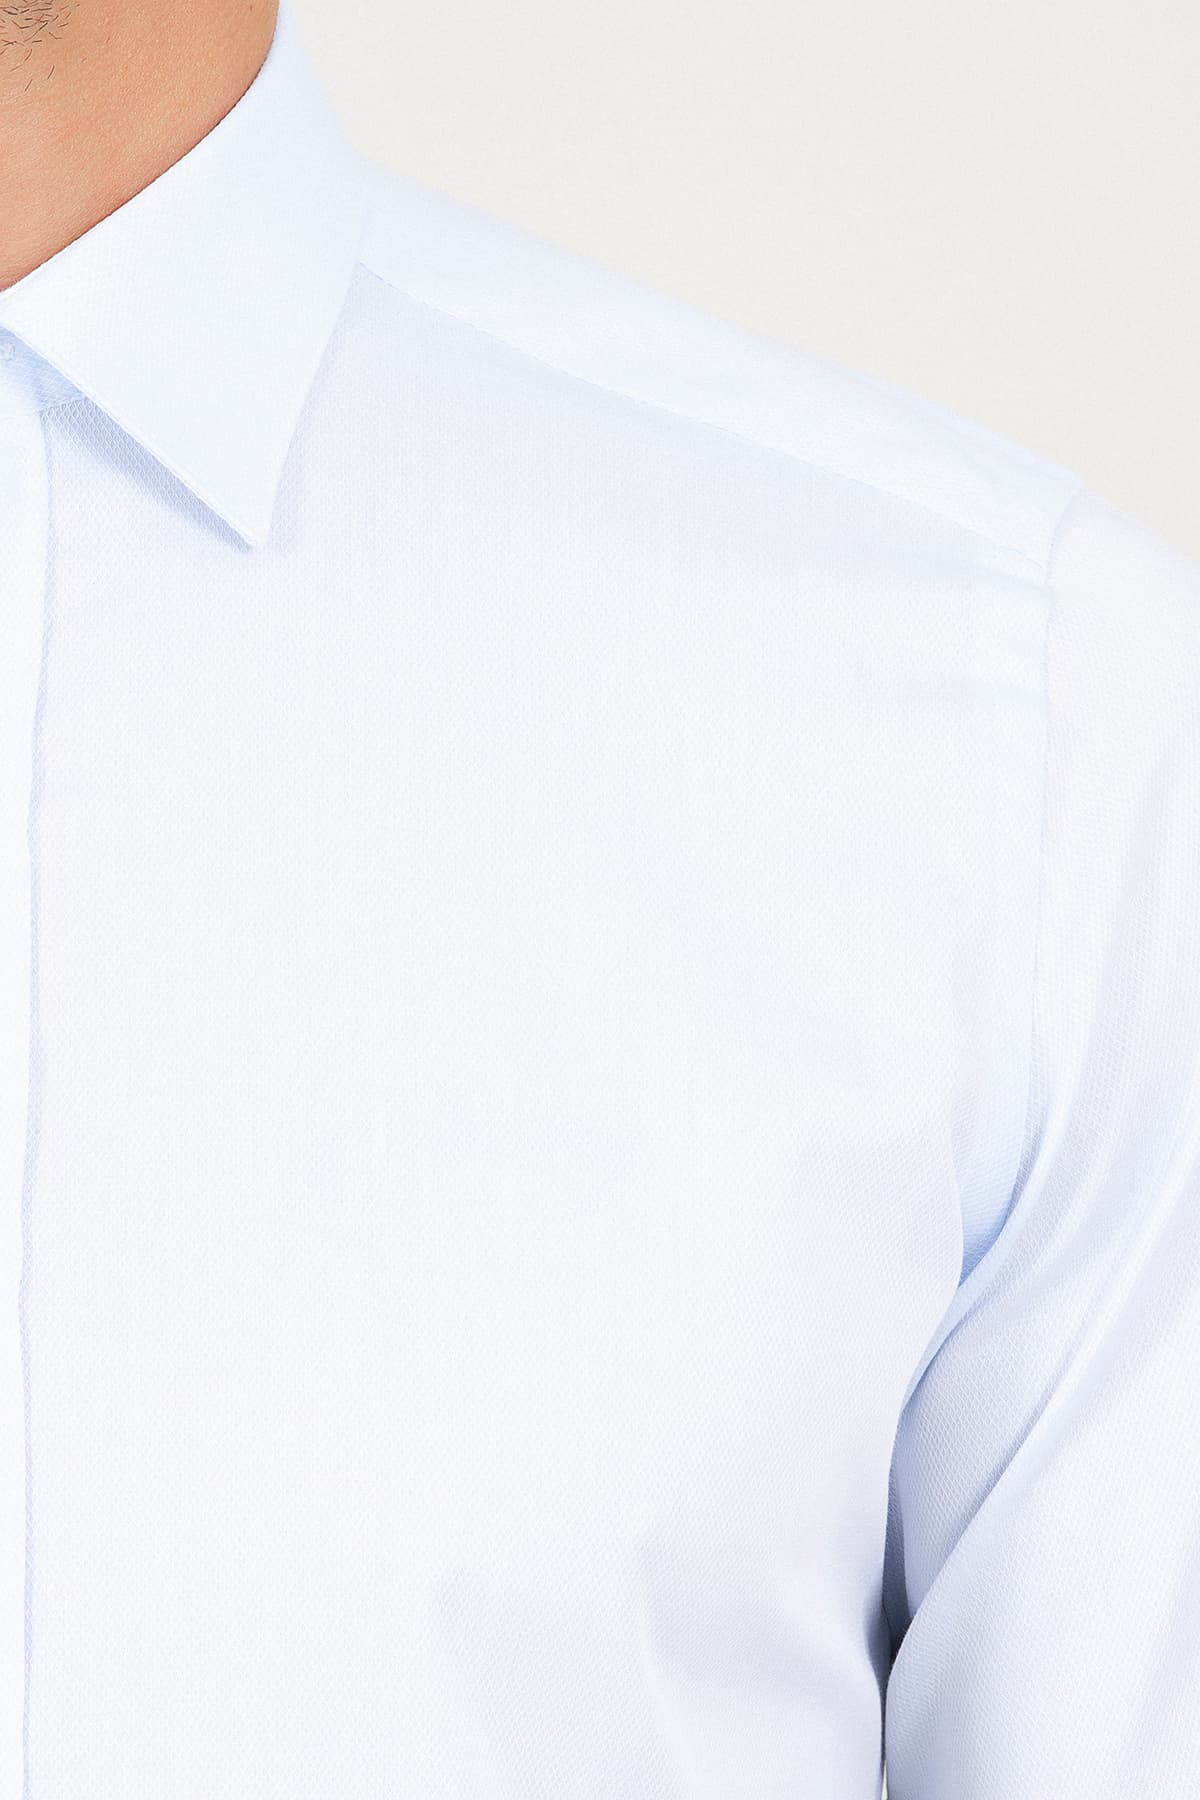 Mavi Slim Fit Desenli 100% Pamuk Uzun Kol Manşetli Gömlek